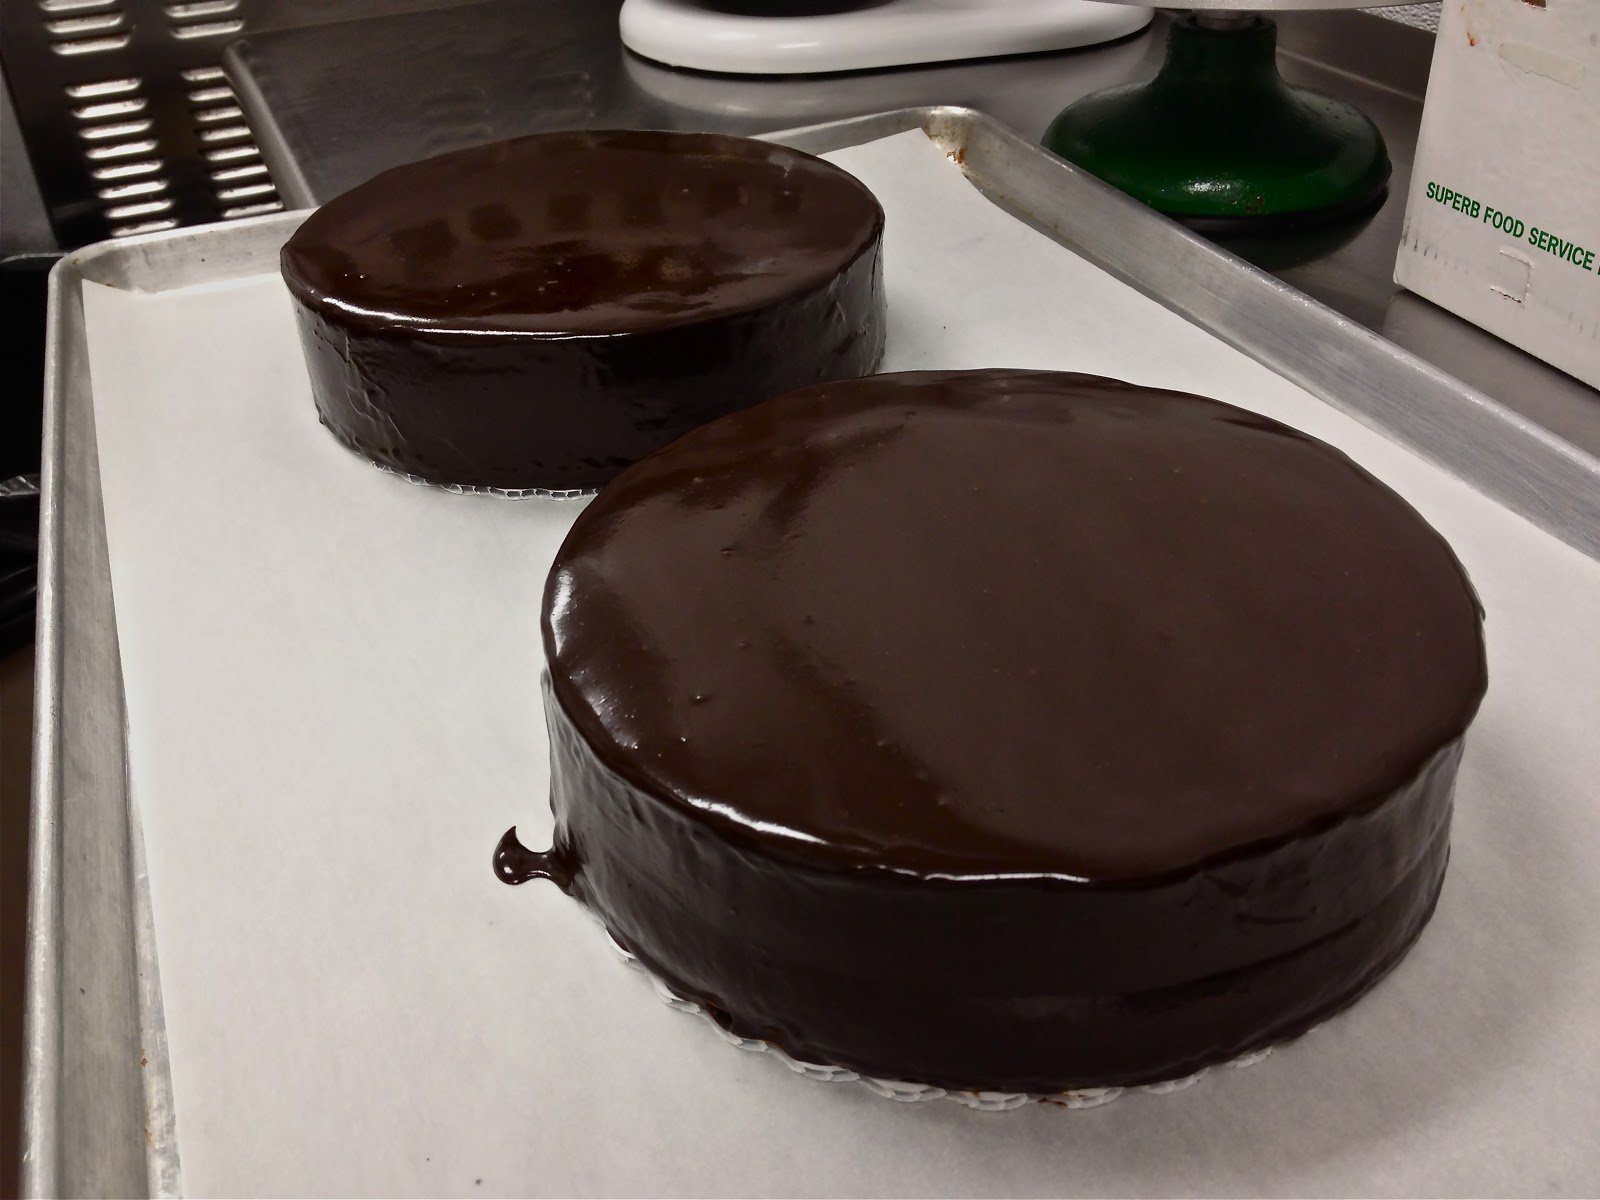 Залить шоколадом. Торт с шоколадной глазурью. Покрытие торта глазурью из шоколада. Торт покрытый шоколадом. Глазурь шоколадная для покрытия торта.